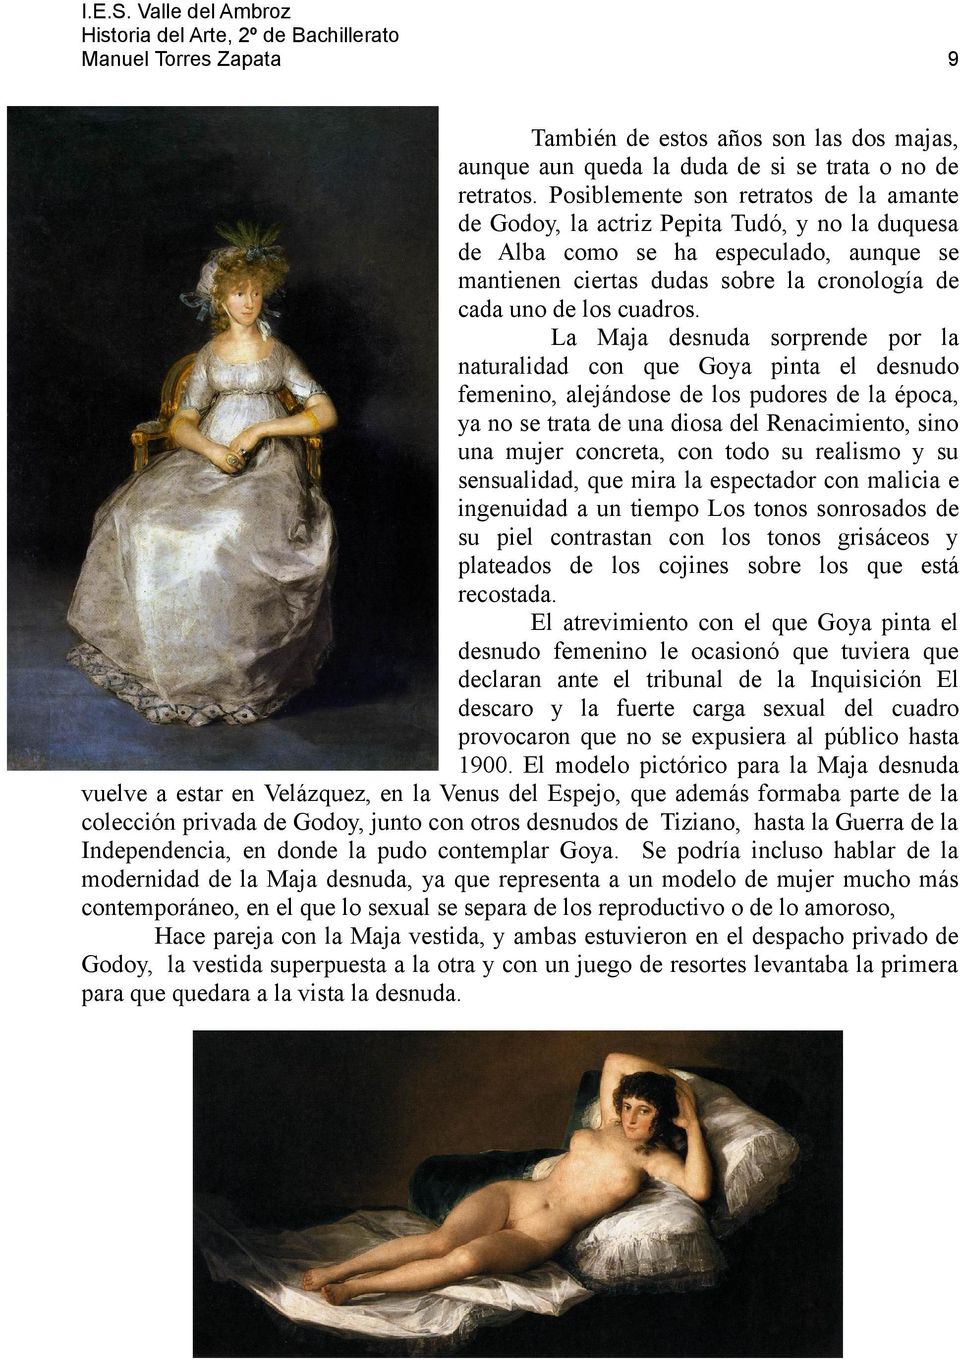 La Maja desnuda sorprende por la naturalidad con que Goya pinta el desnudo femenino, alejándose de los pudores de la época, ya no se trata de una diosa del Renacimiento, sino una mujer concreta, con